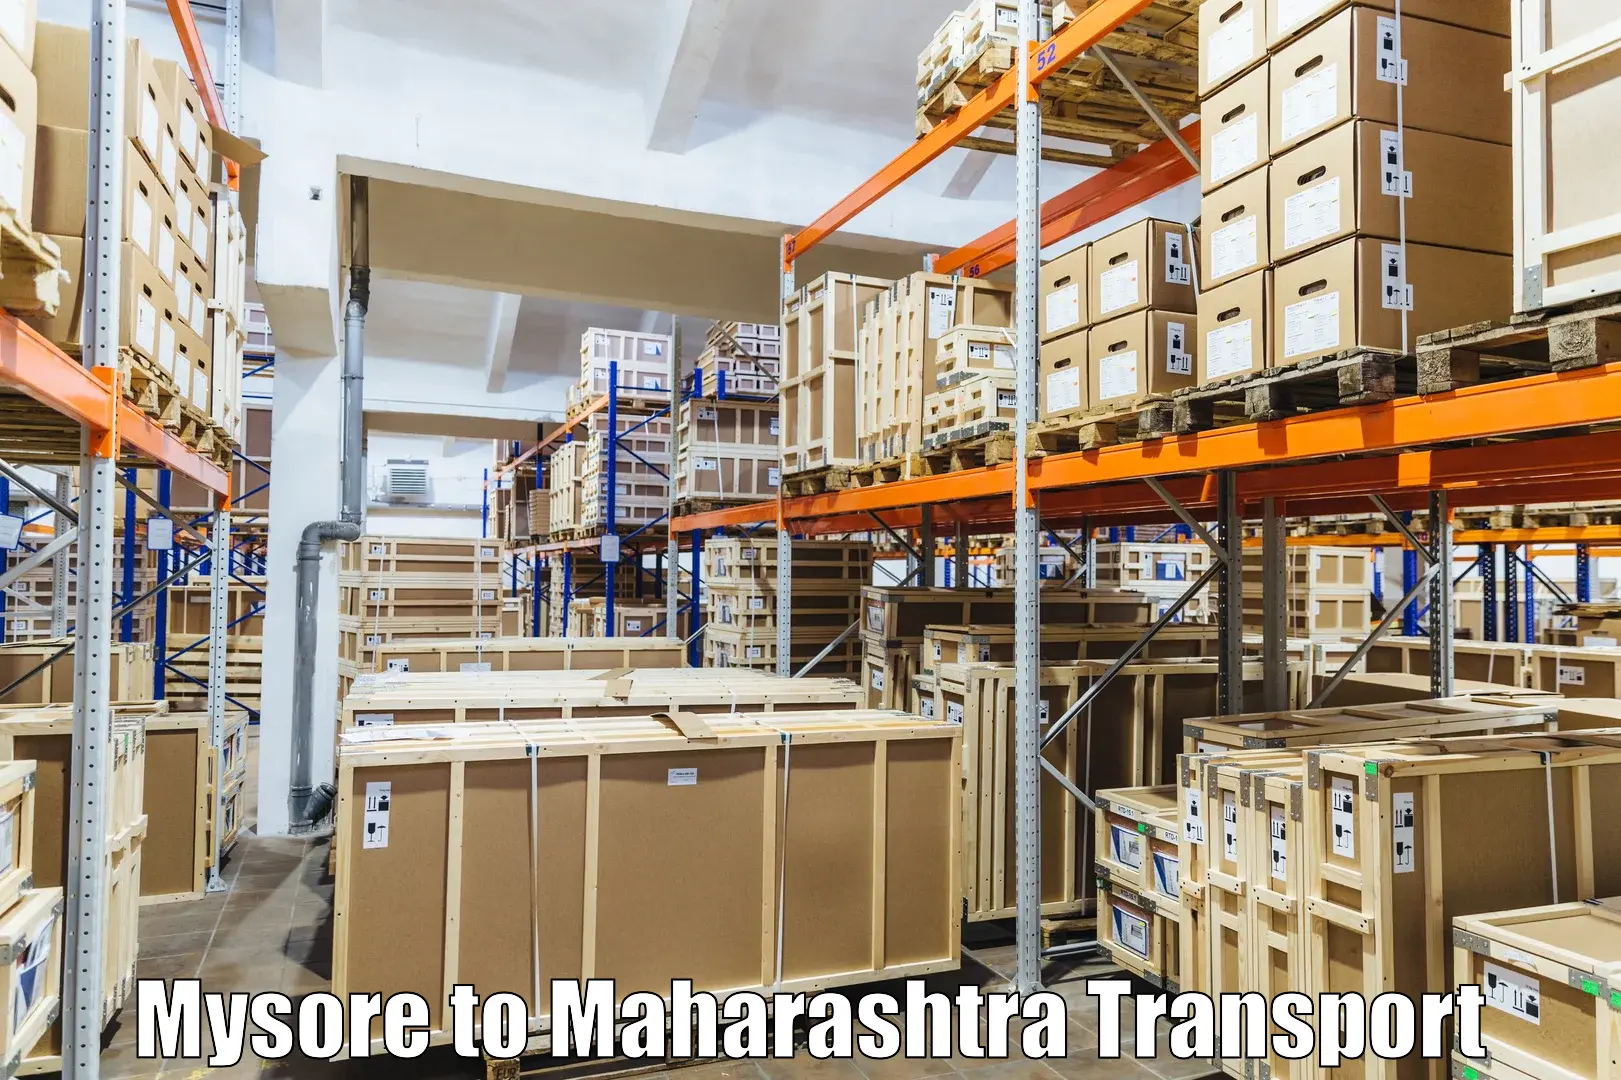 Goods delivery service Mysore to Raigarh Maharashtra